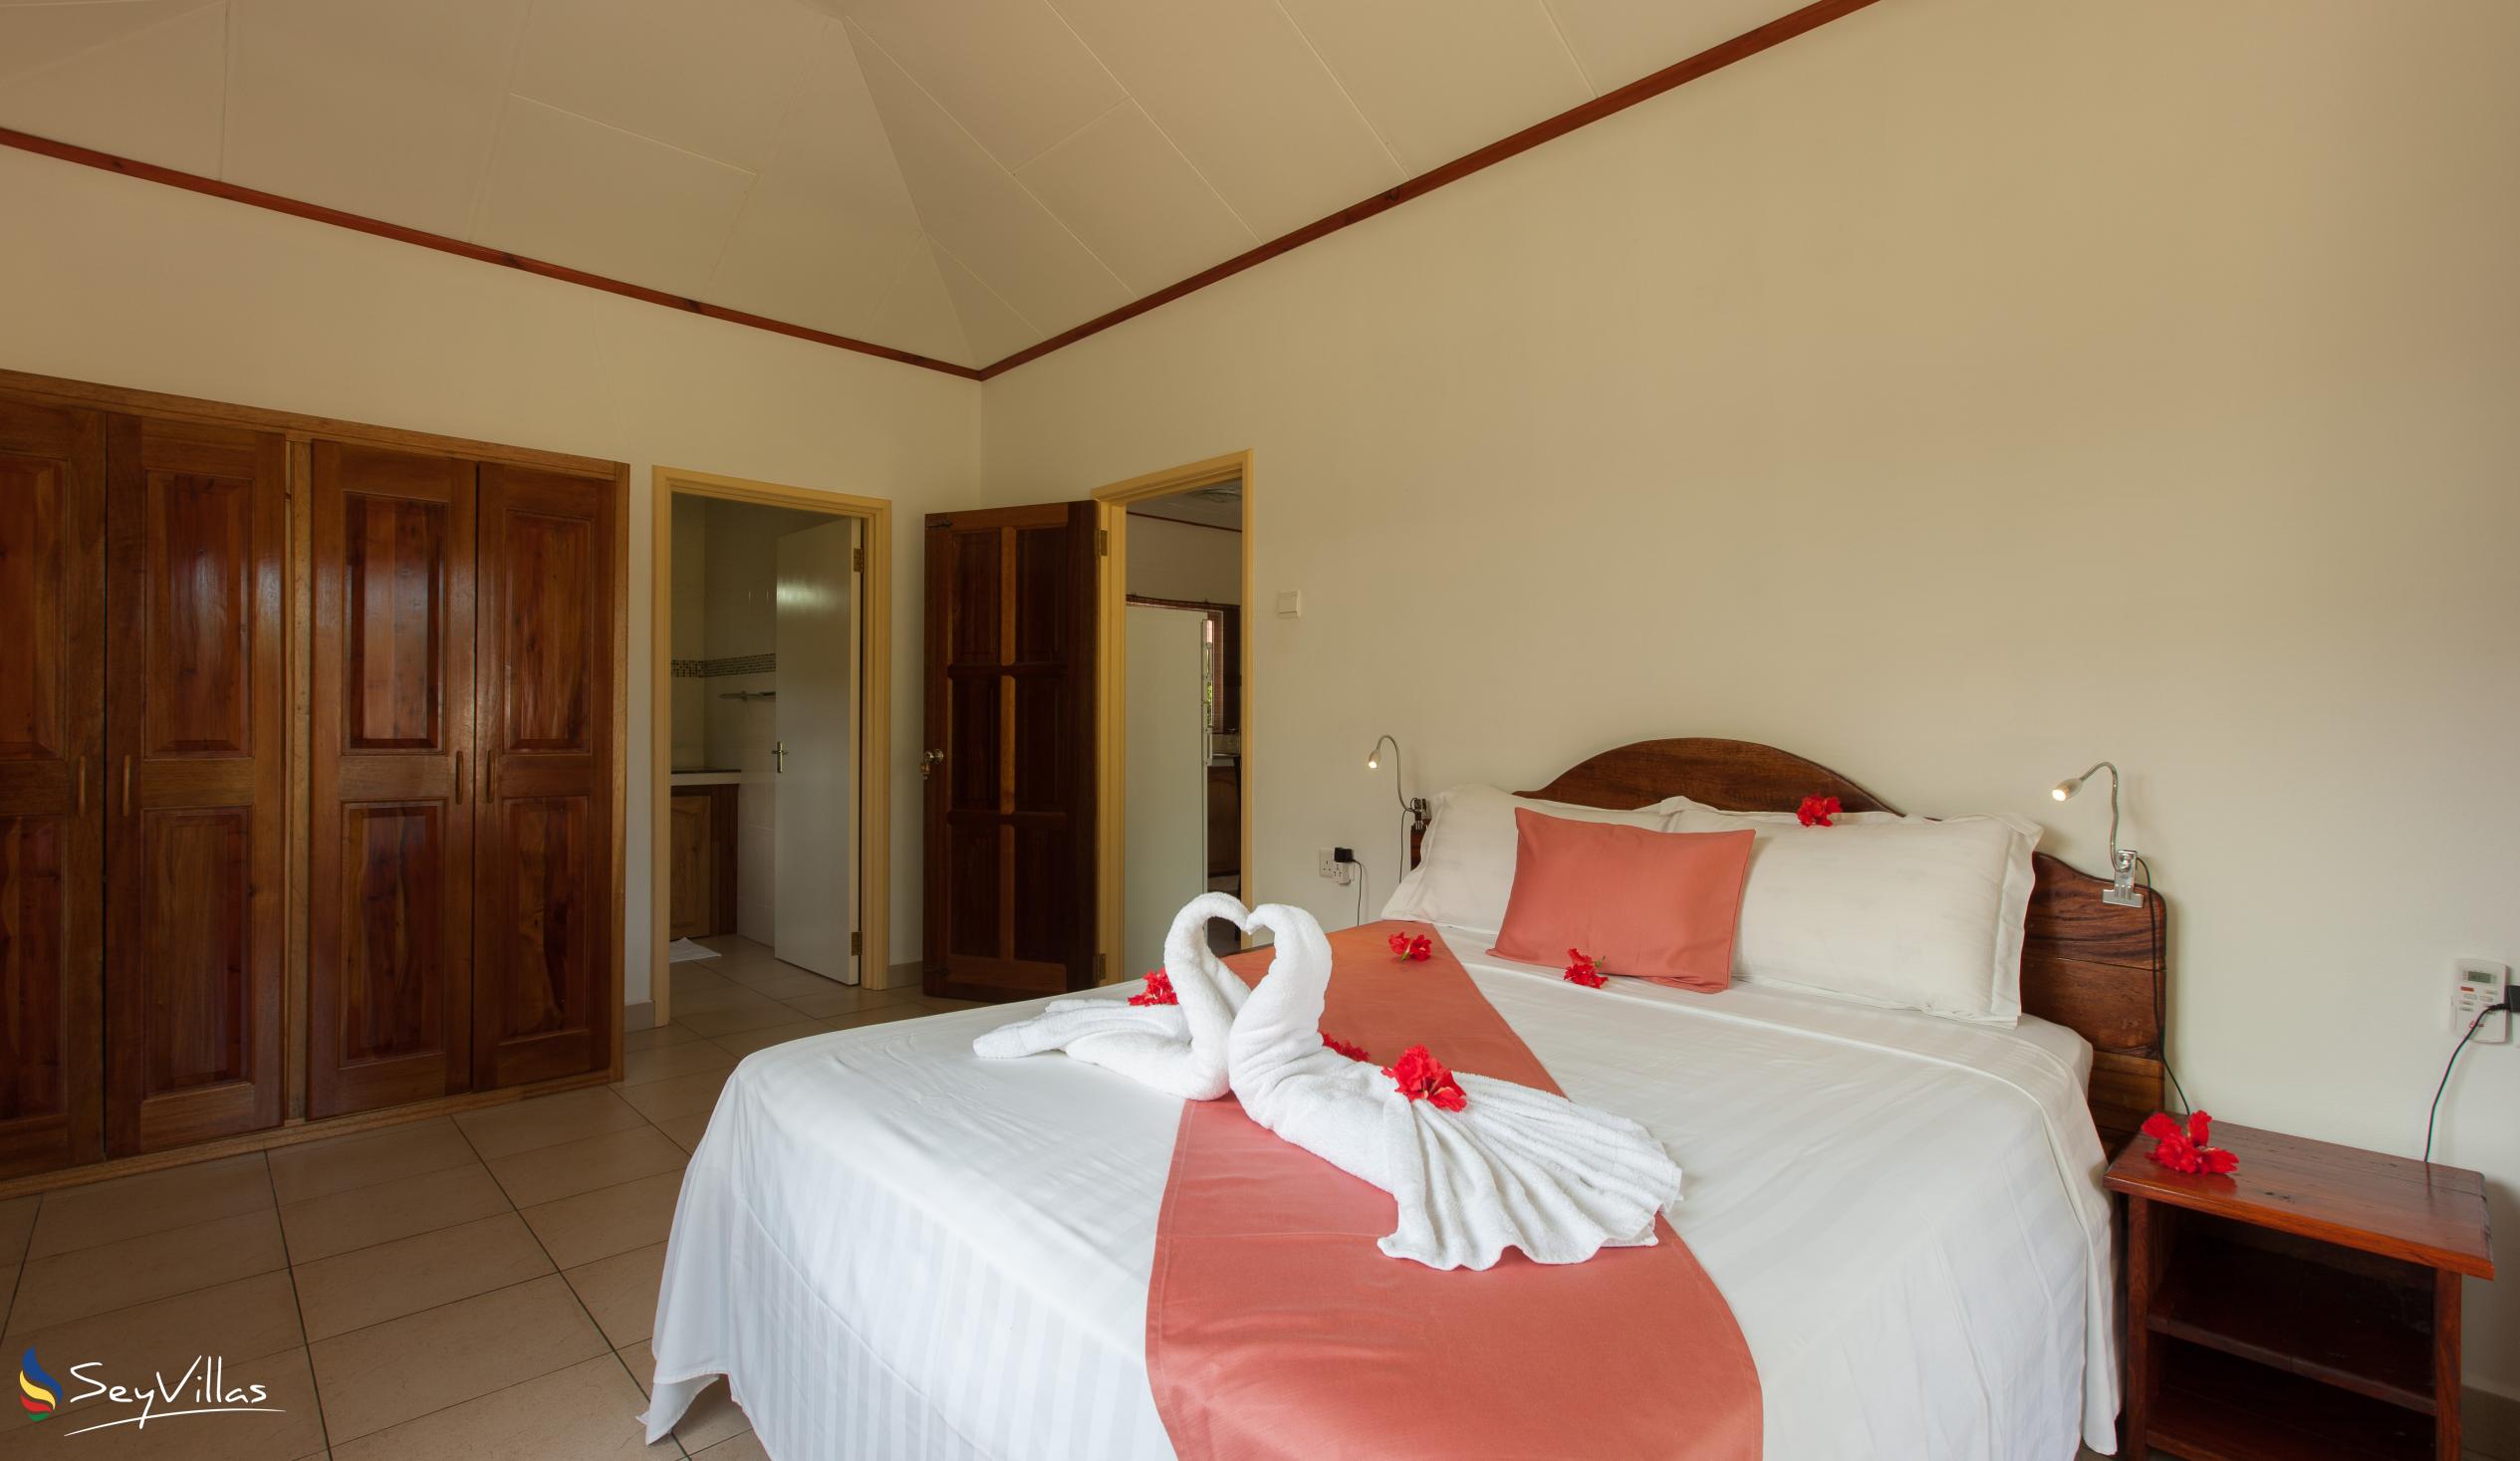 Foto 51: Hostellerie La Digue - Chalet mit 2 Schlafzimmern - La Digue (Seychellen)